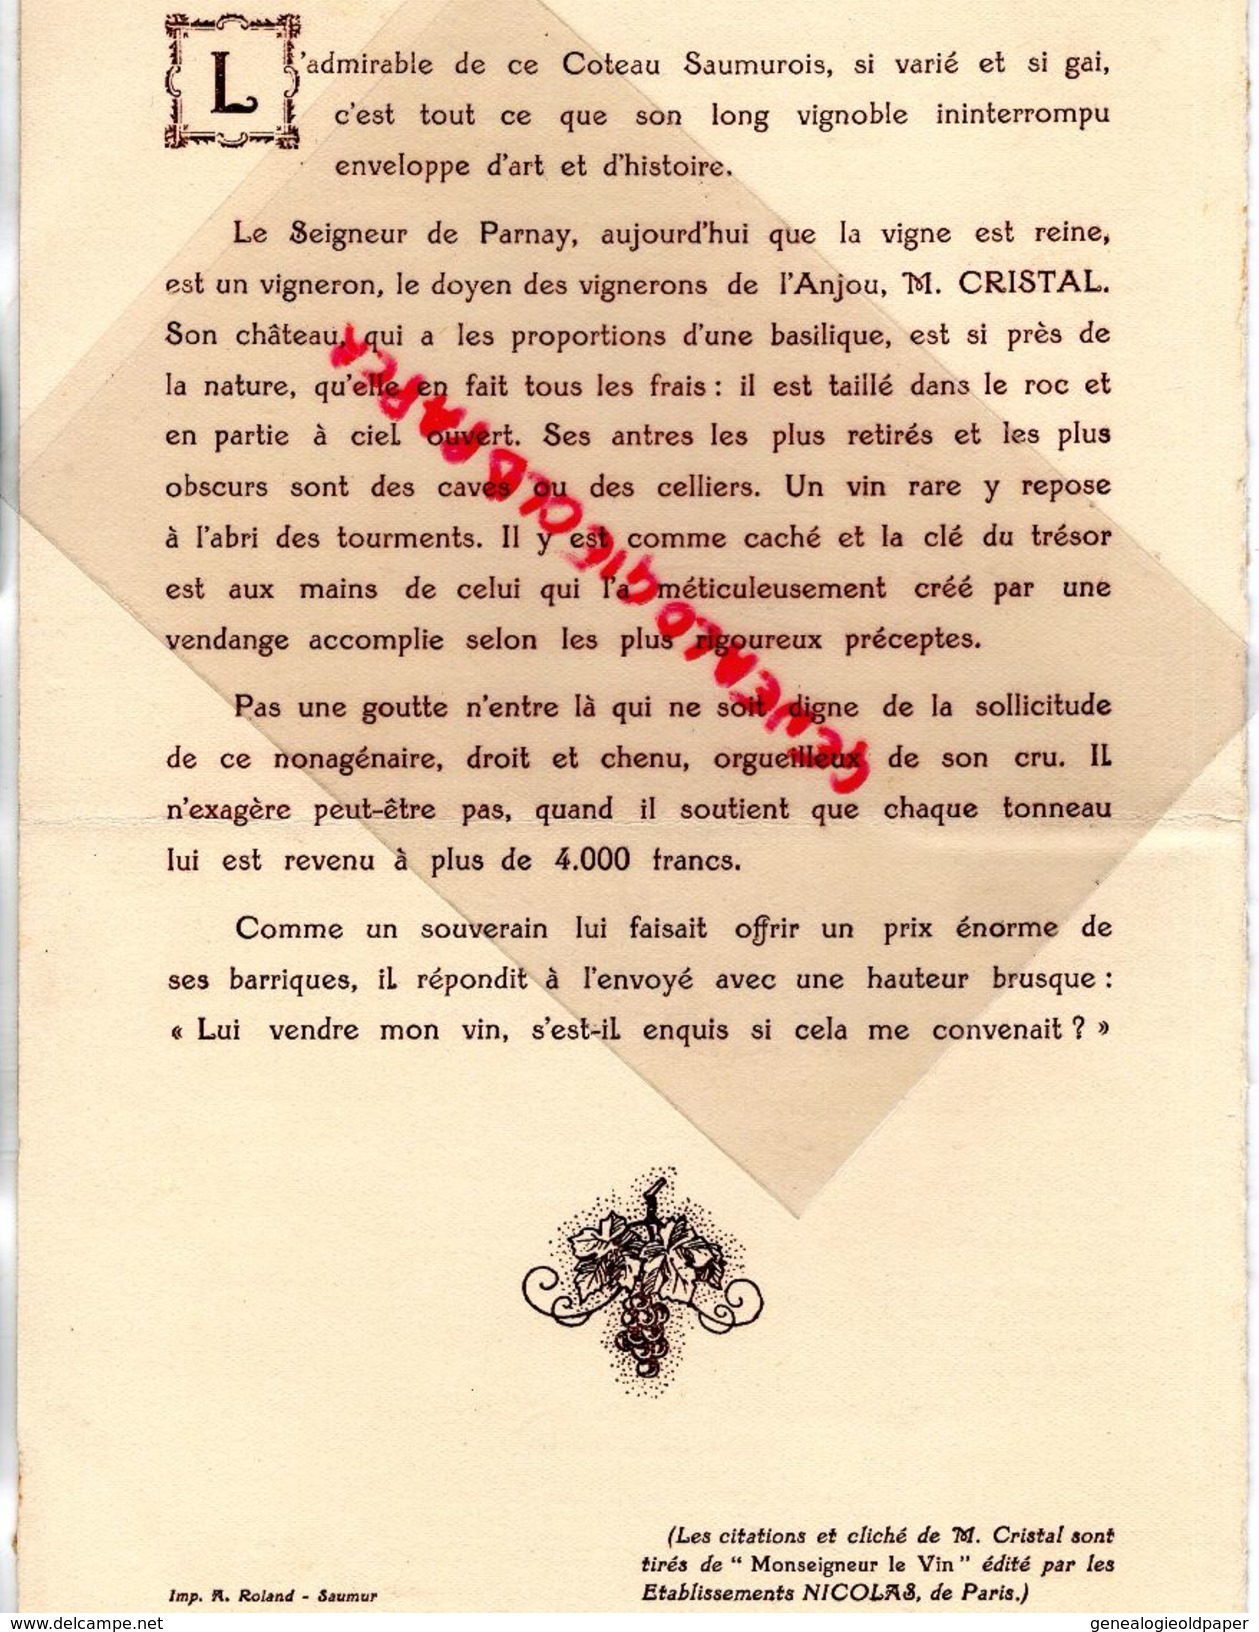 49- SAUMUR- RARE MENU BANQUET FOIRE AUX VINS- 2 FEVRIER 1929- HENRI MOUCHE -DESSIN DE CARLEGLE-GRAND HOTEL DE LONDRES - Menus